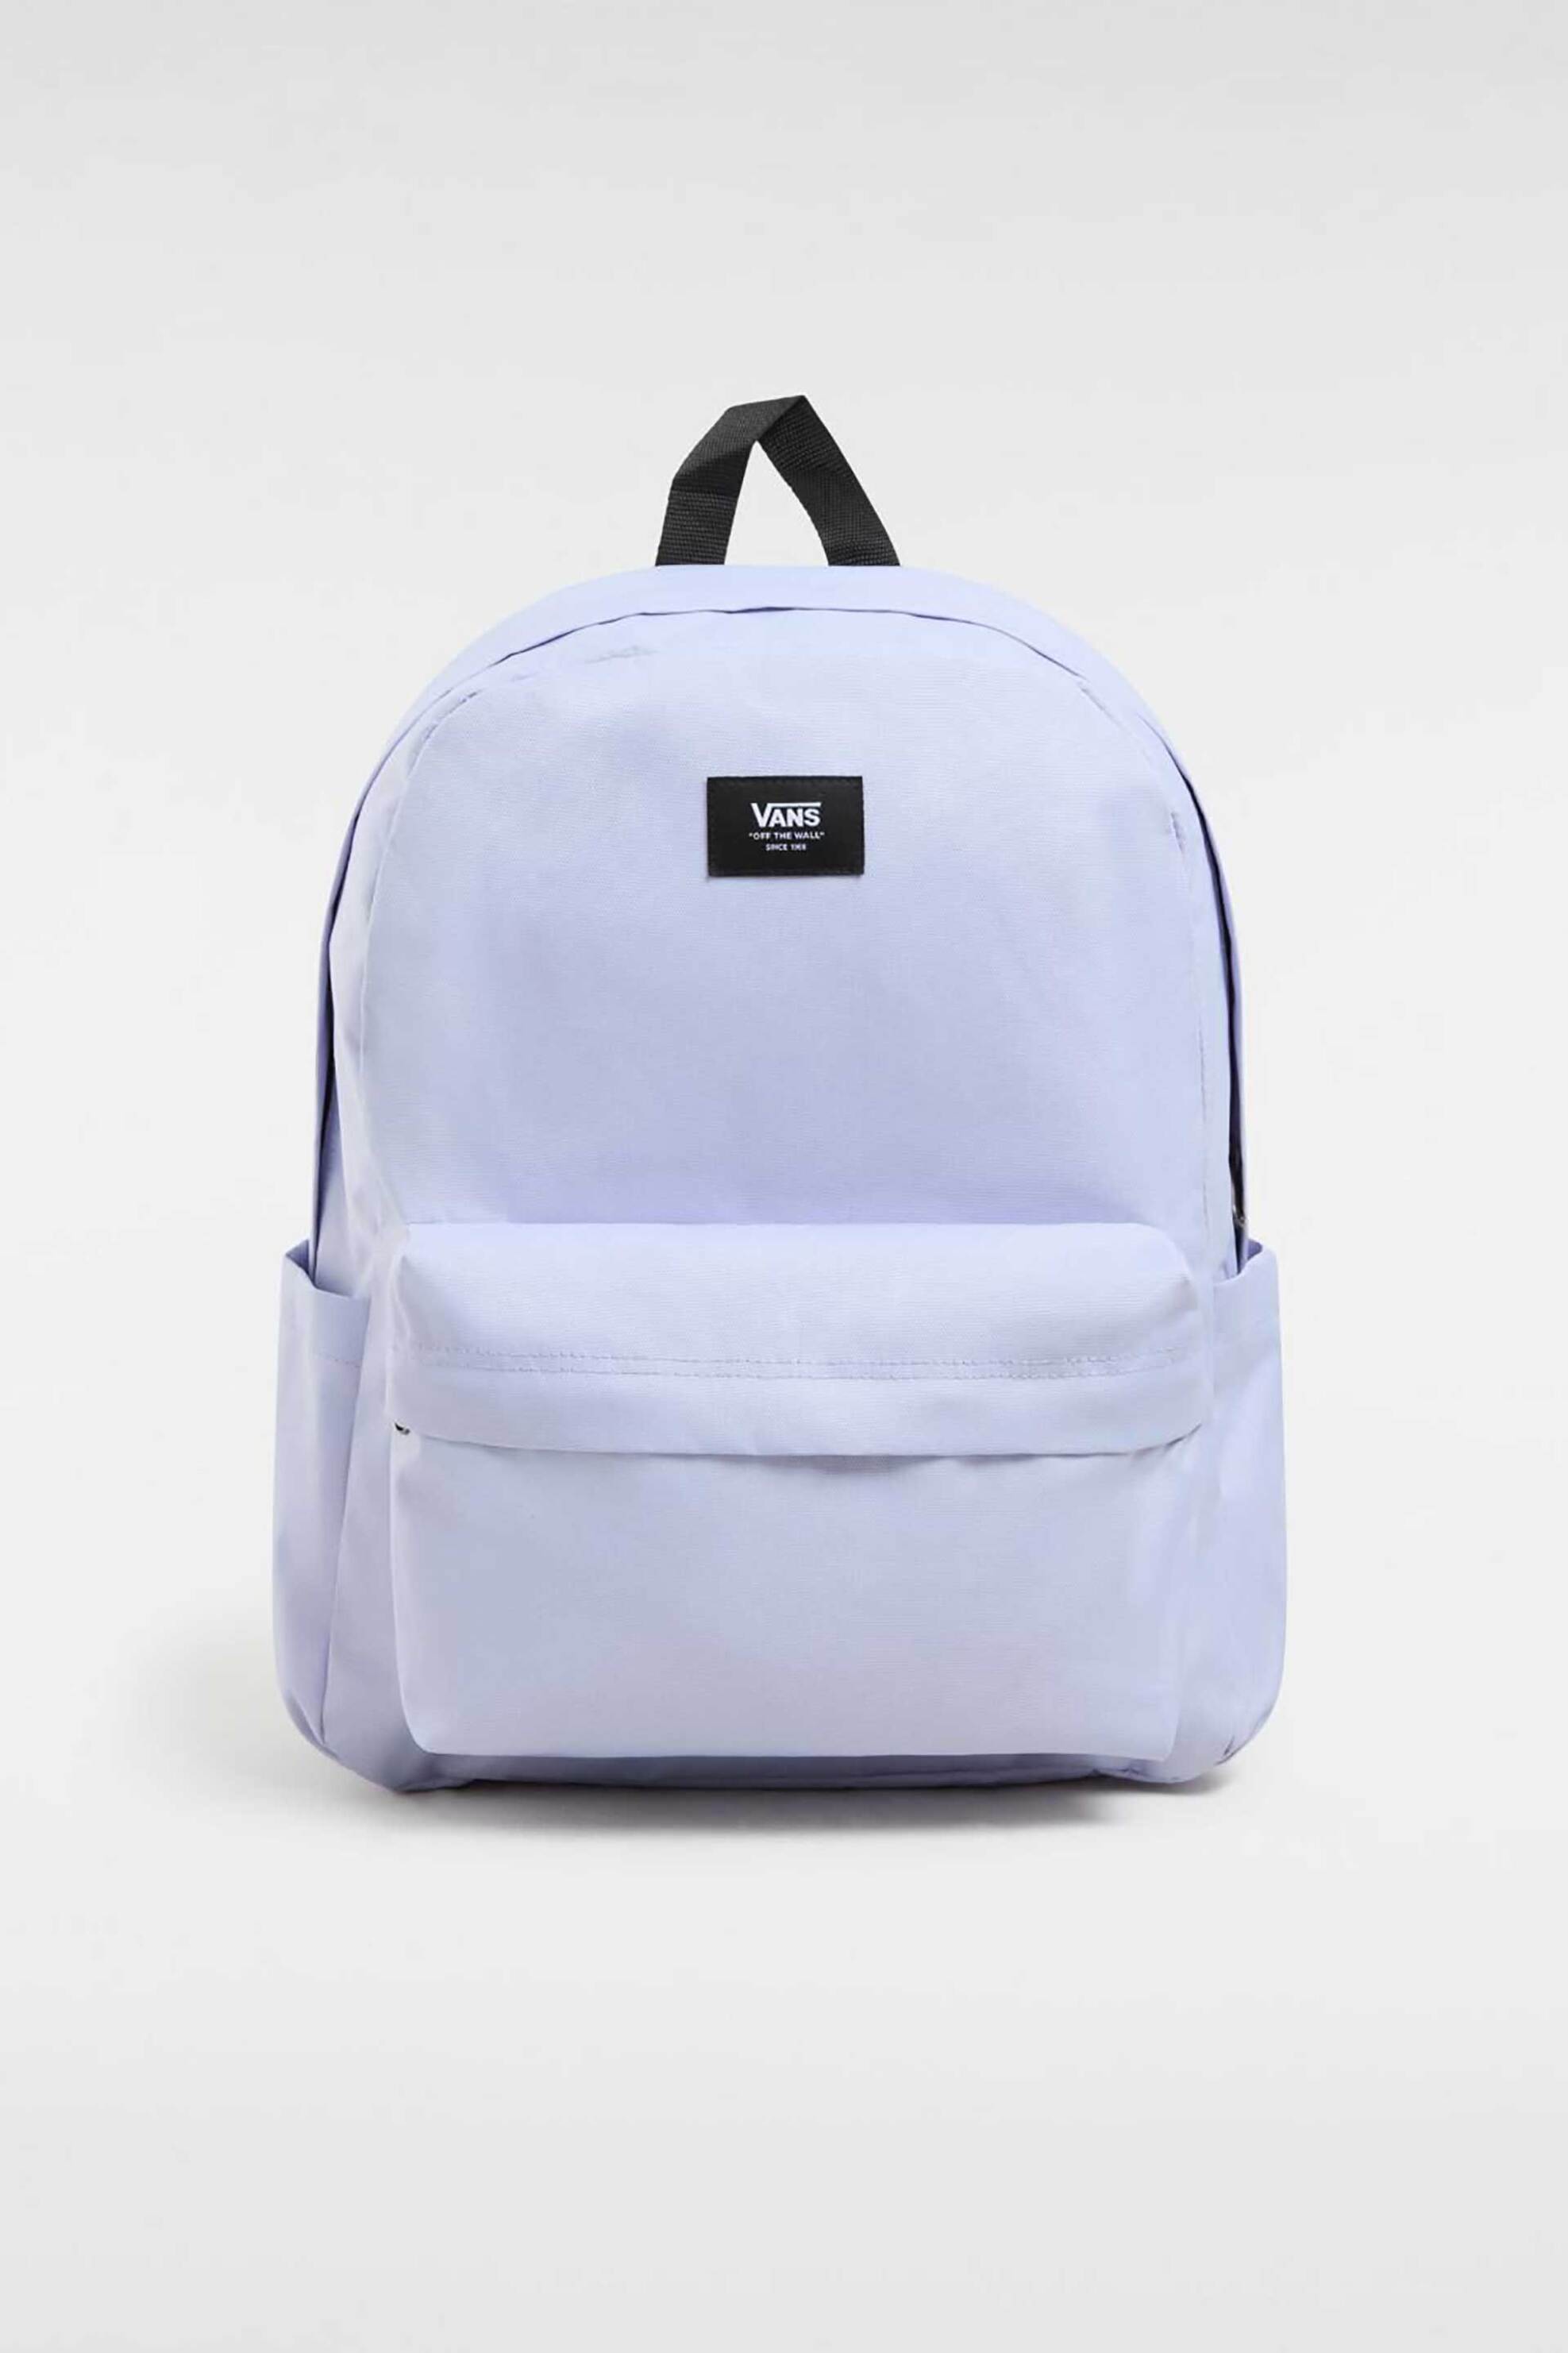 Ανδρική Μόδα > Ανδρικές Τσάντες > Ανδρικά Σακίδια & Backpacks Vans ανδρικό backpack μονόχρωμο με contrast logo patch "Old Skool" - VN000H4WCR21 Λιλά